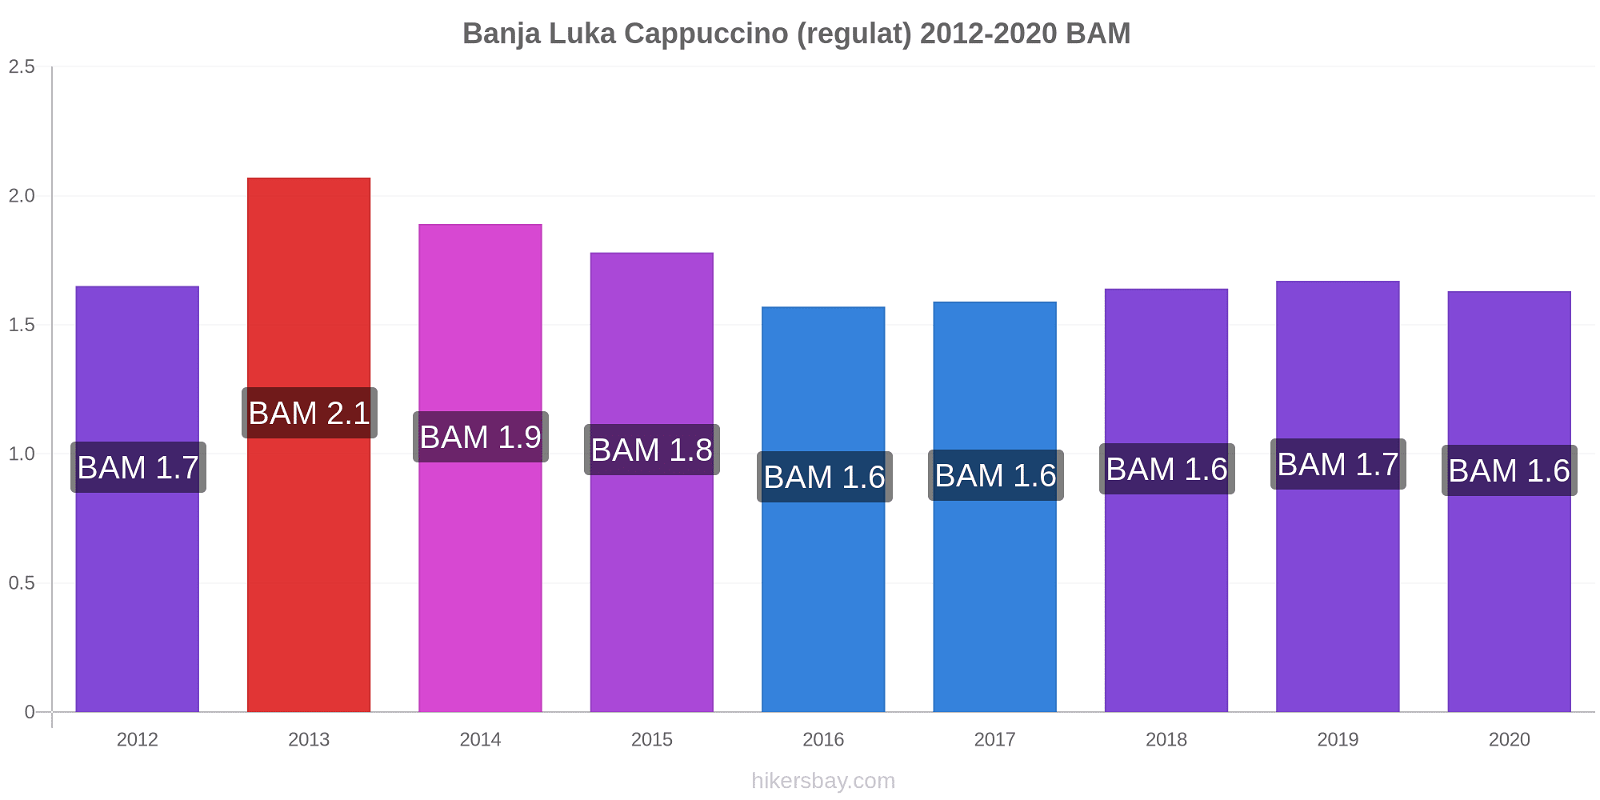 Banja Luka modificări de preț Cappuccino (regulat) hikersbay.com